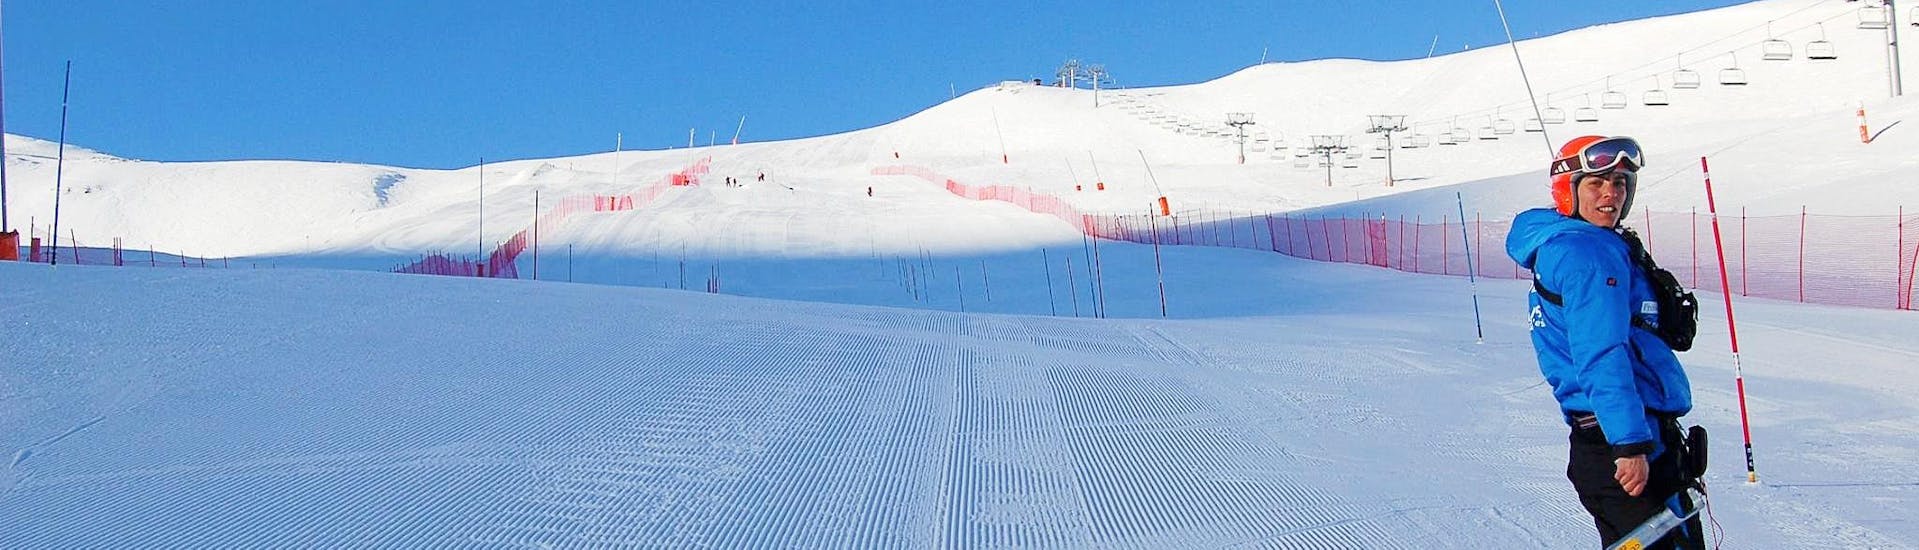 Clases de esquí para adultos de todos los niveles.